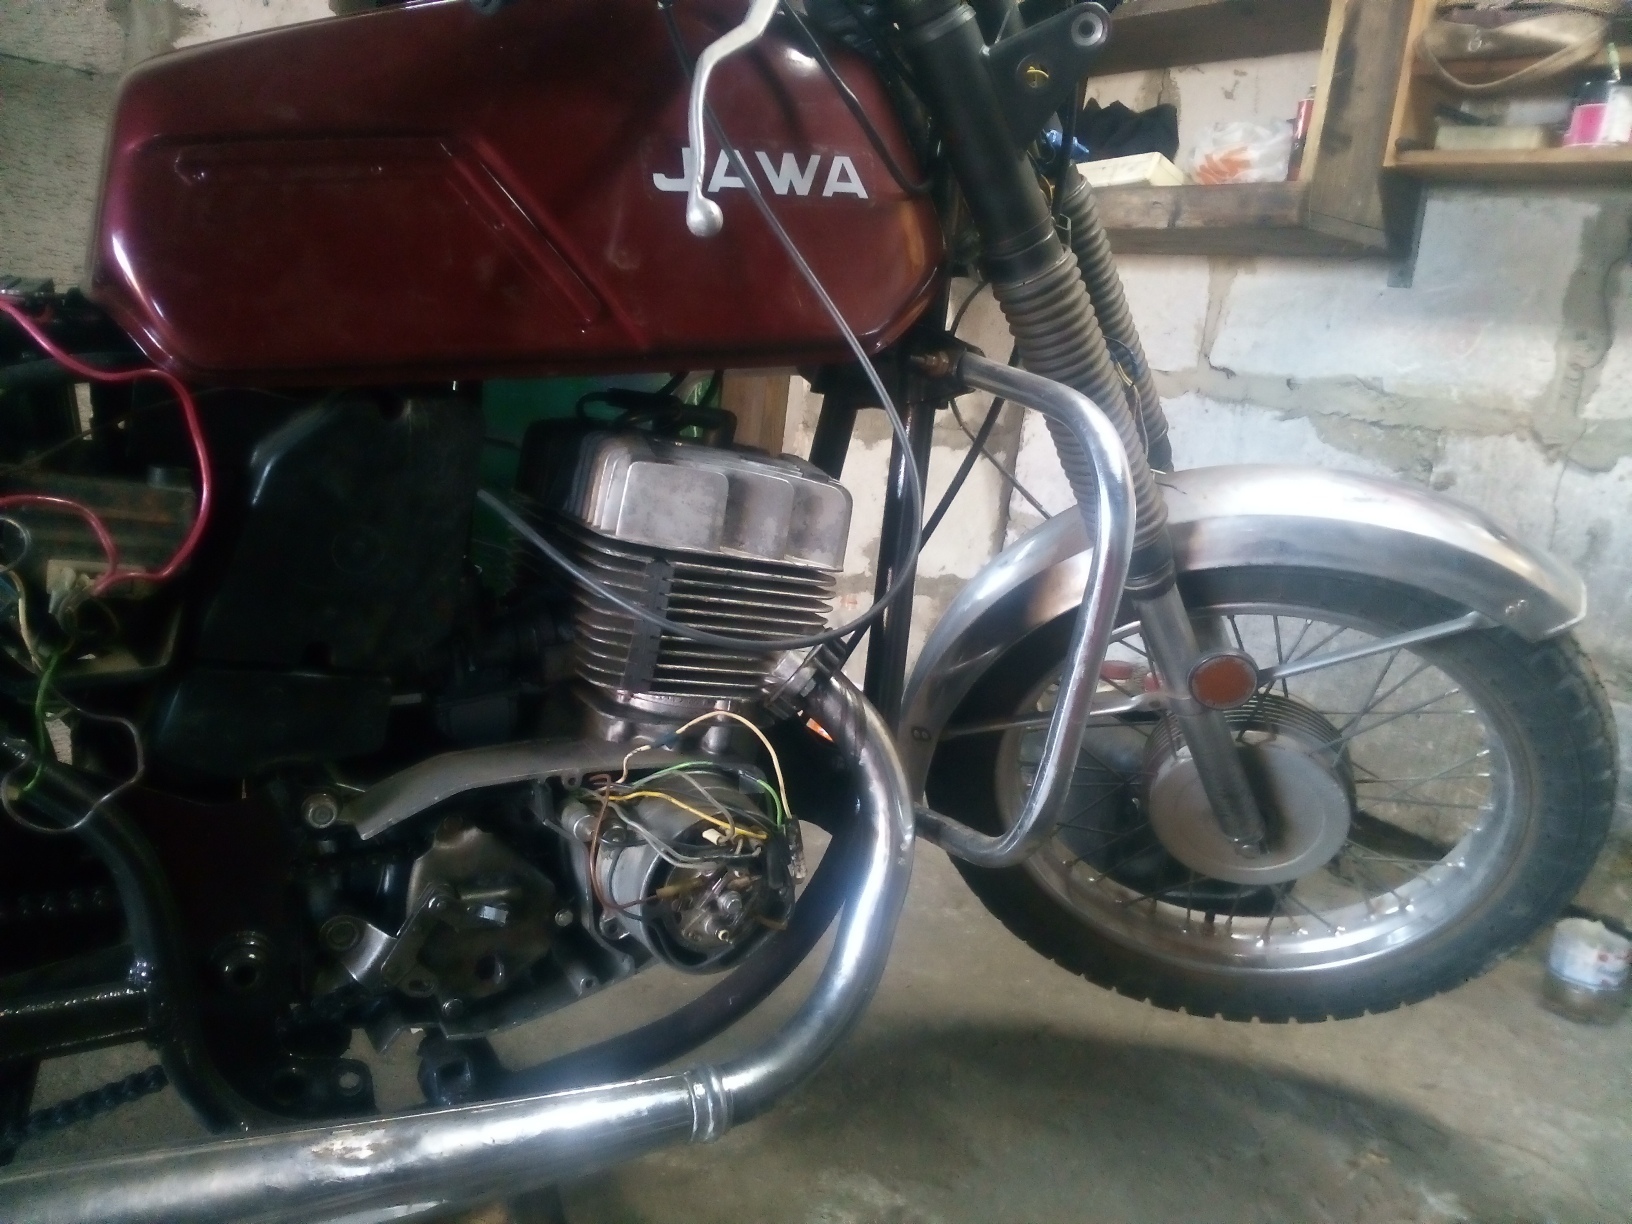 Motorcycle Java - My, Motorcycle Java, Moto, Motorcycles, Repair, Video, Longpost